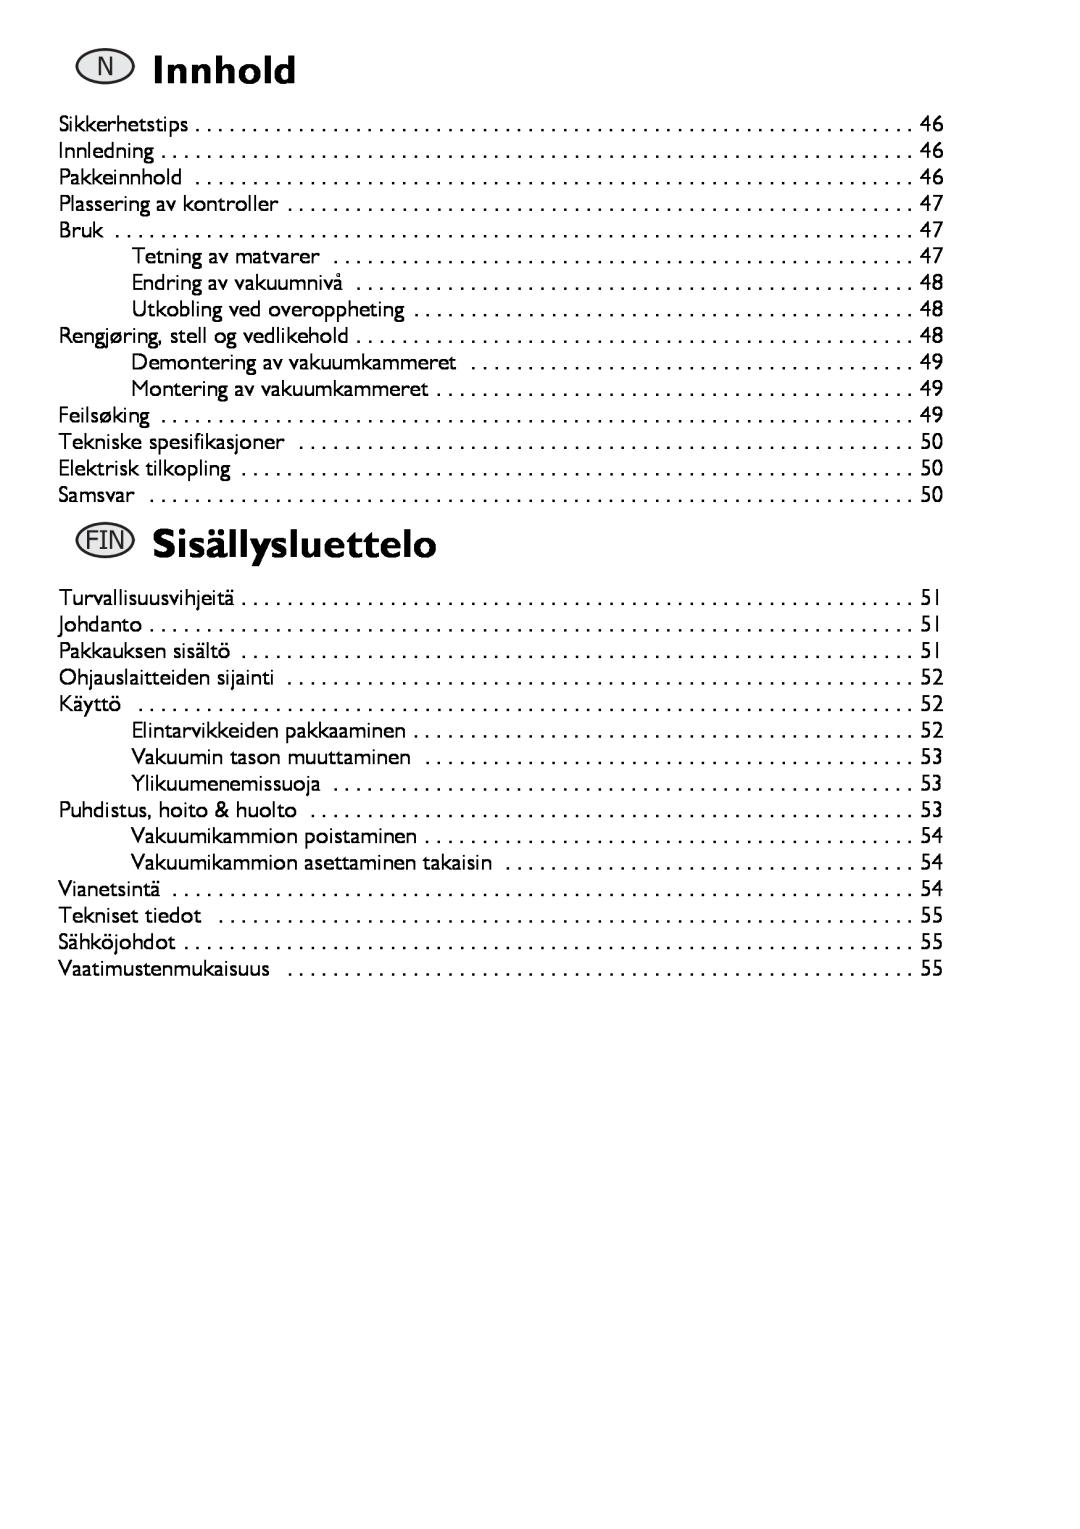 Buffalo Tools S097 instruction manual Innhold, Sisällysluettelo 